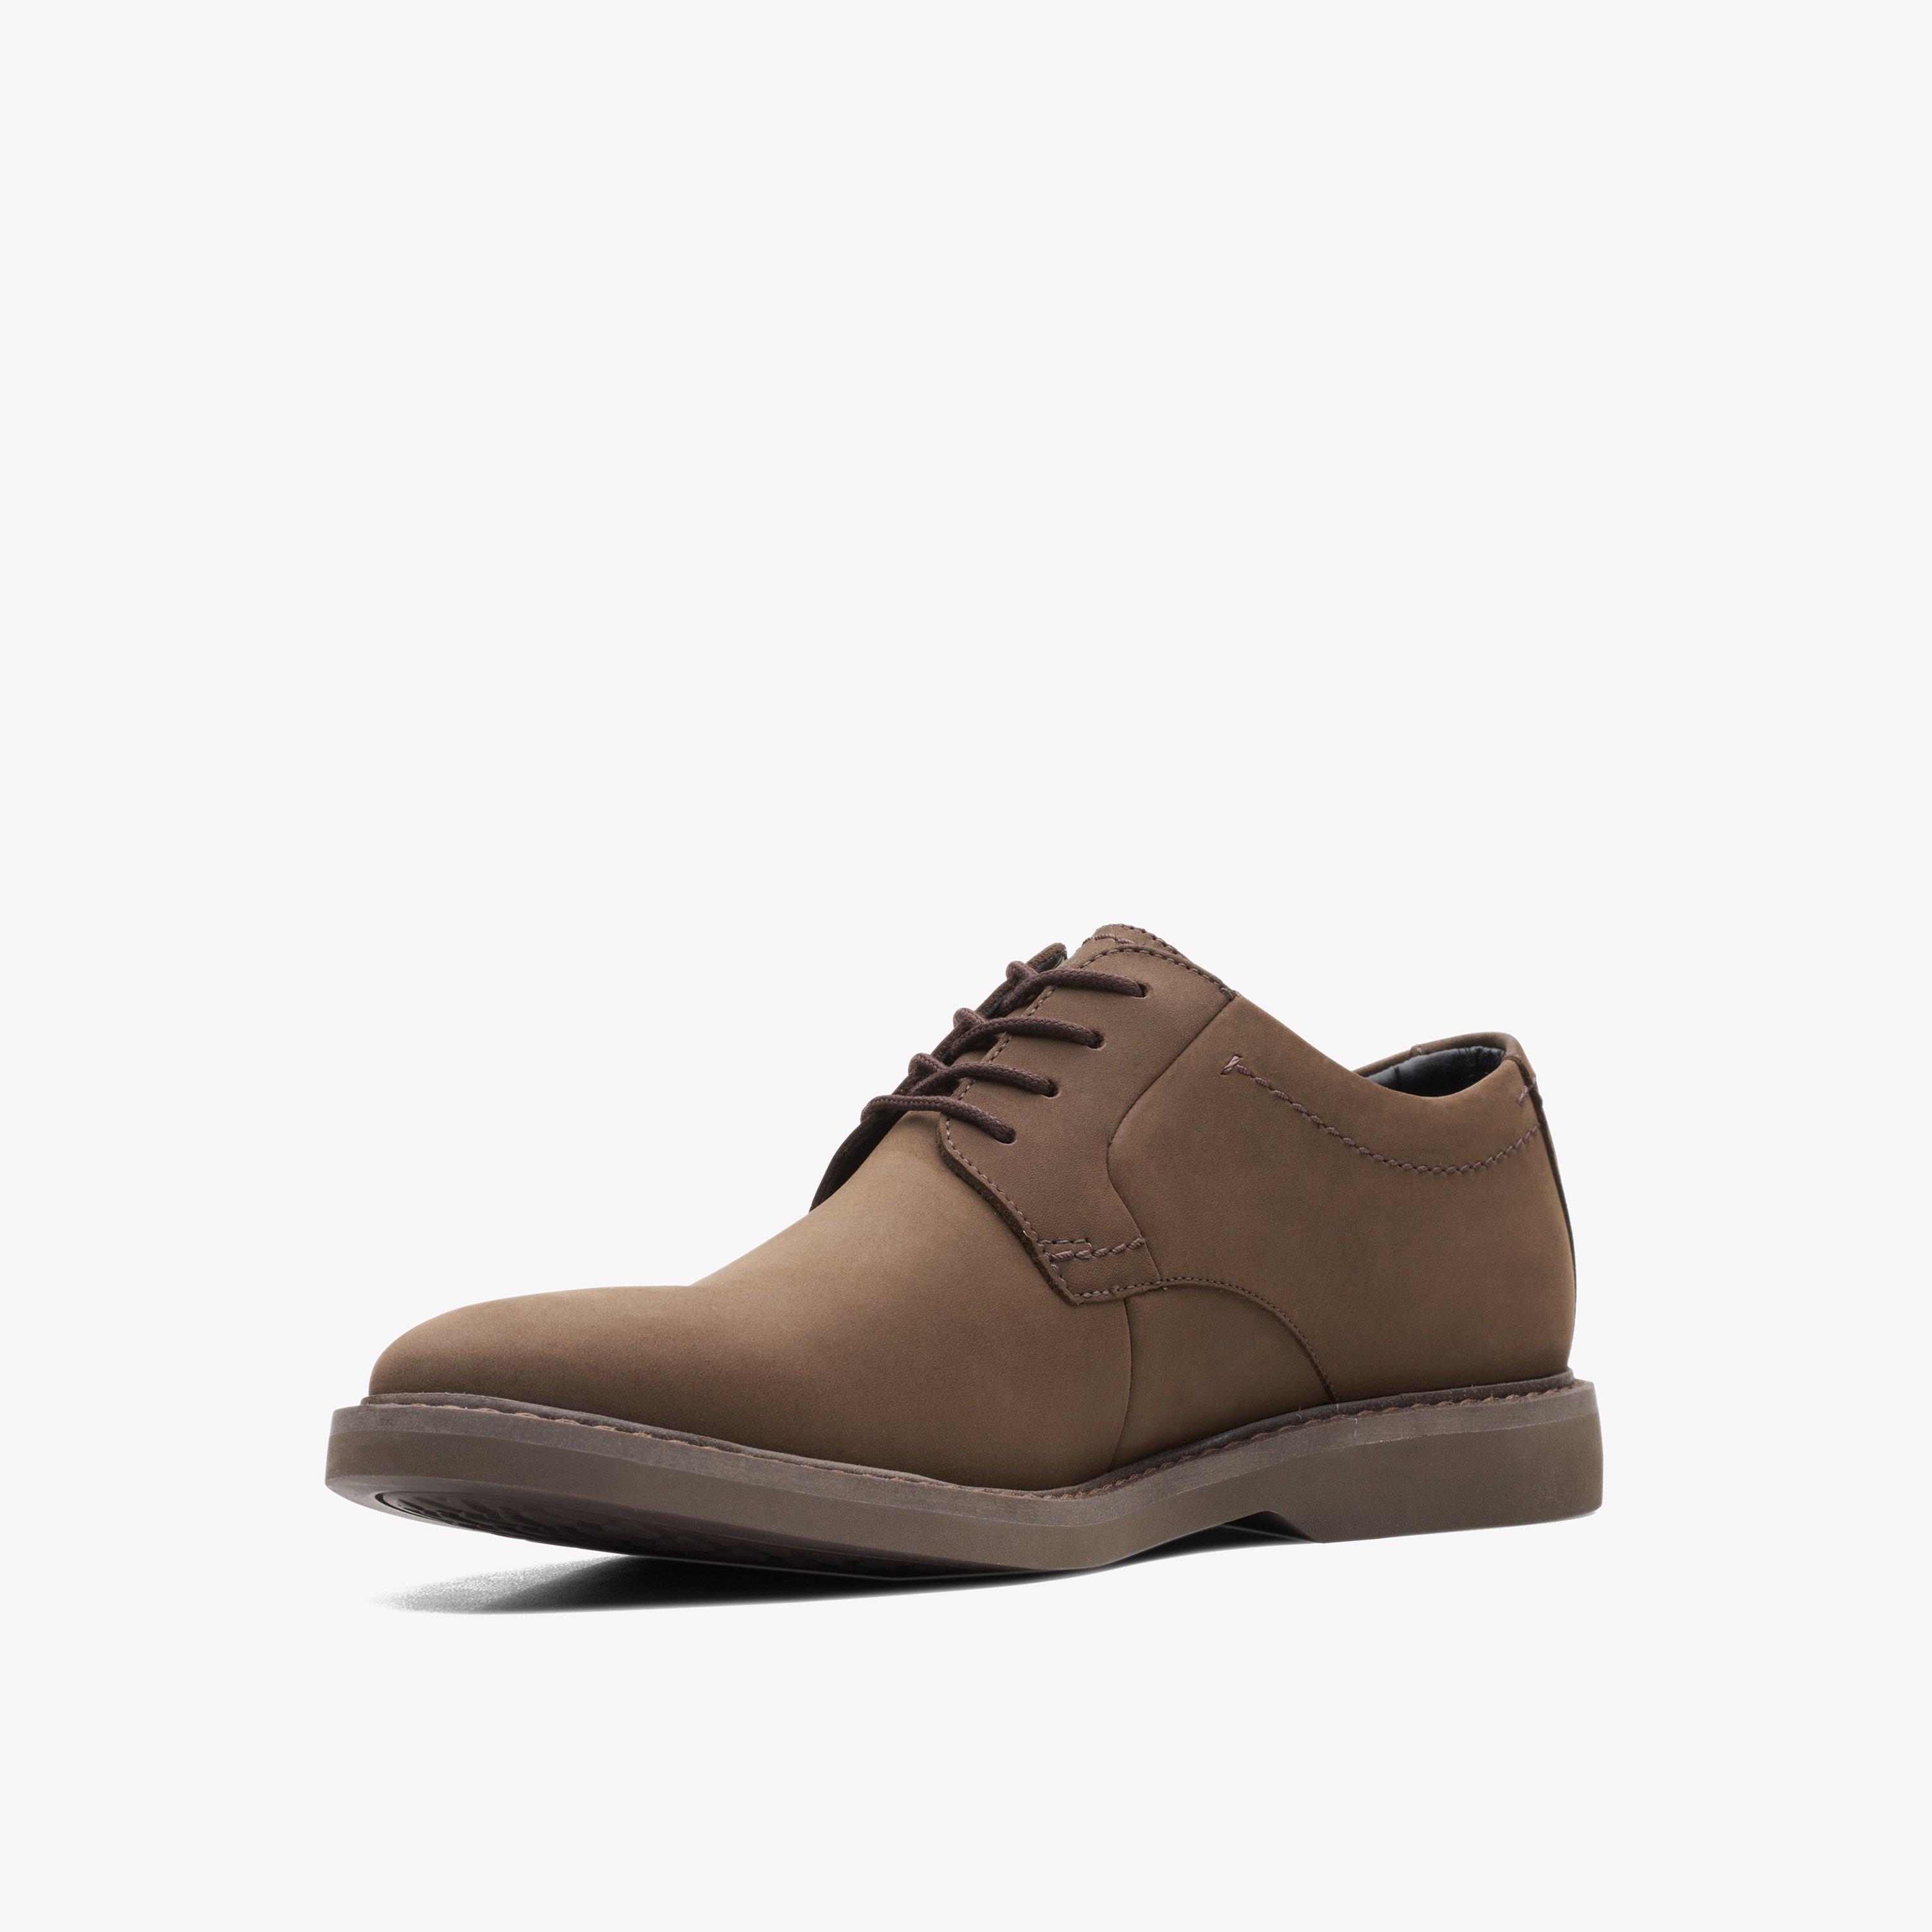 Clarks Craftdean Cap Mens Formal Shoes Colour: Black - Size: 10